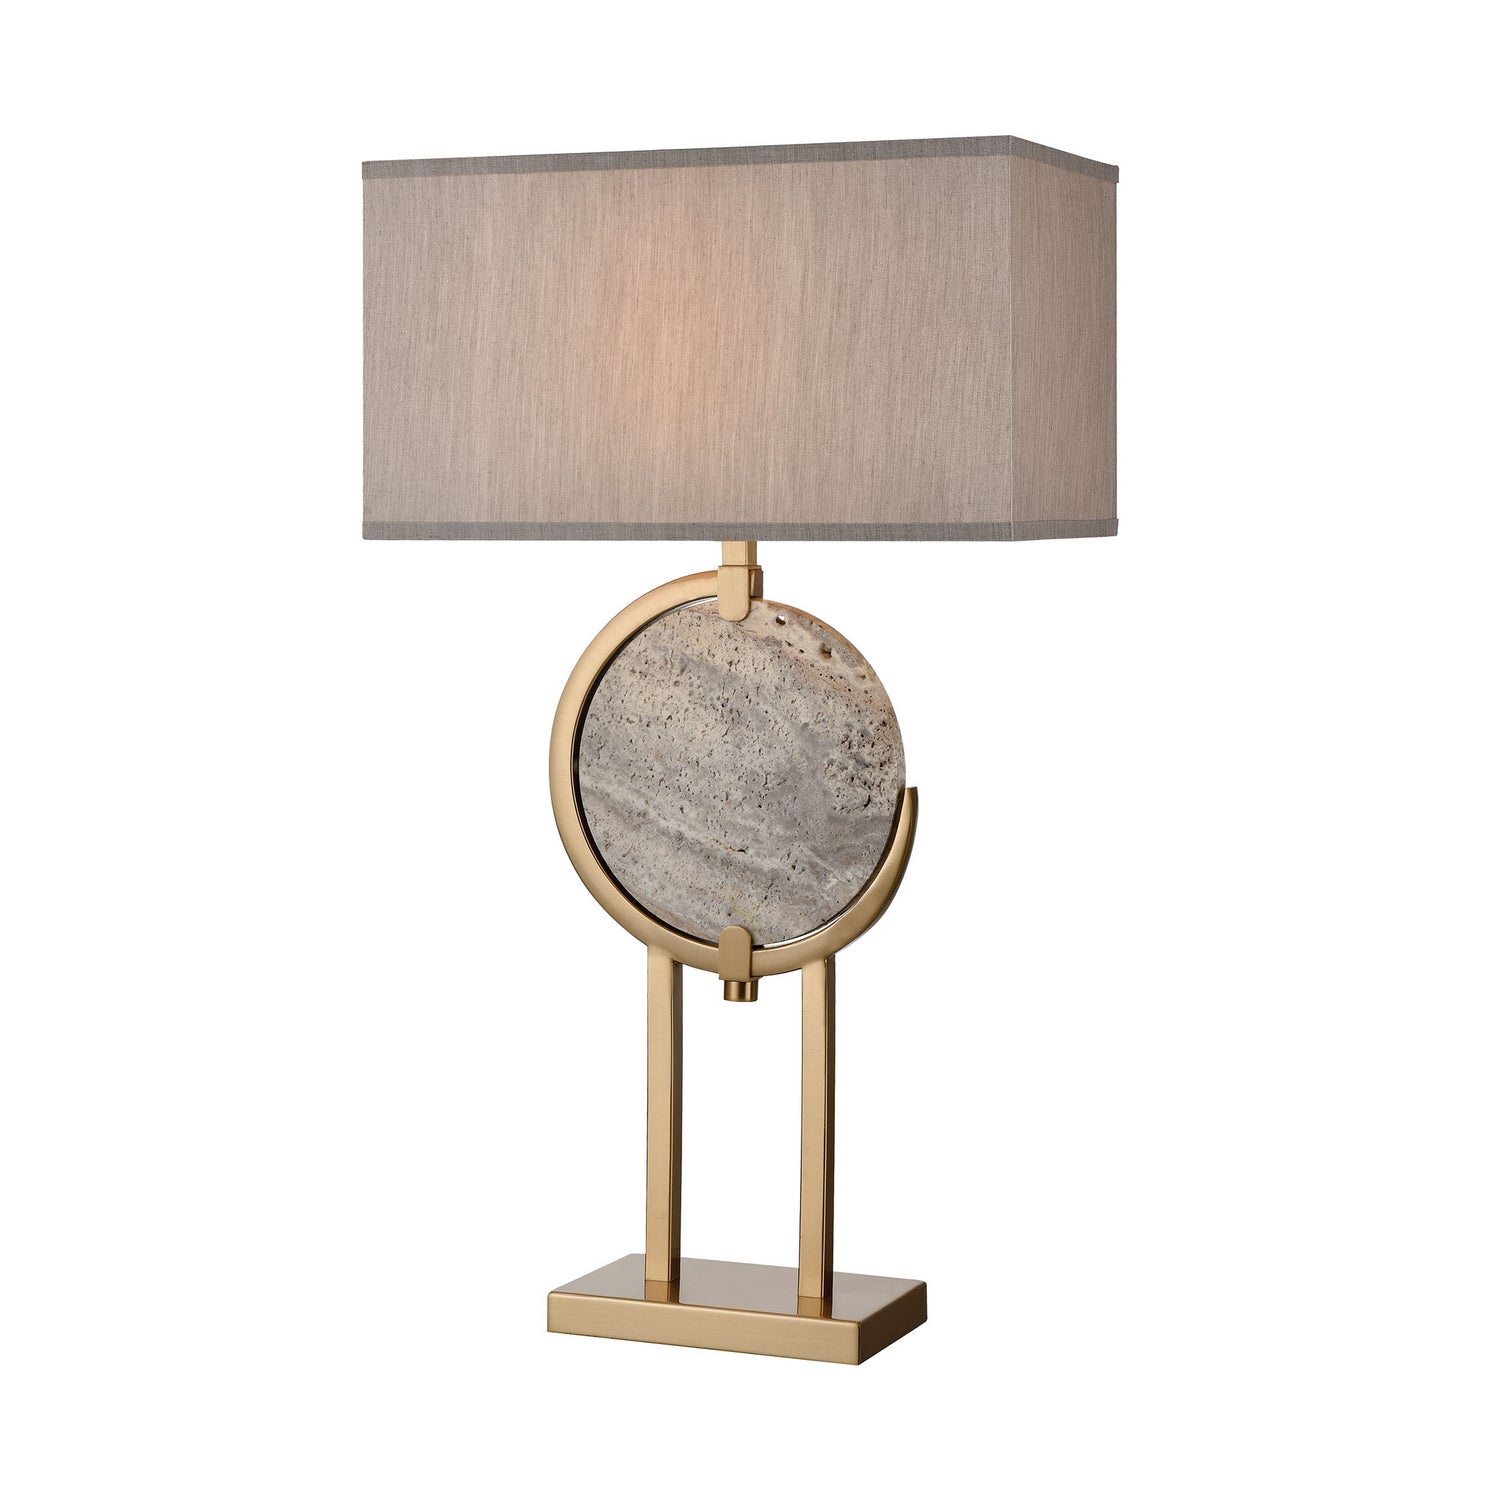 ELK Home - D4113 - One Light Table Lamp - Arabah - Gray Marble